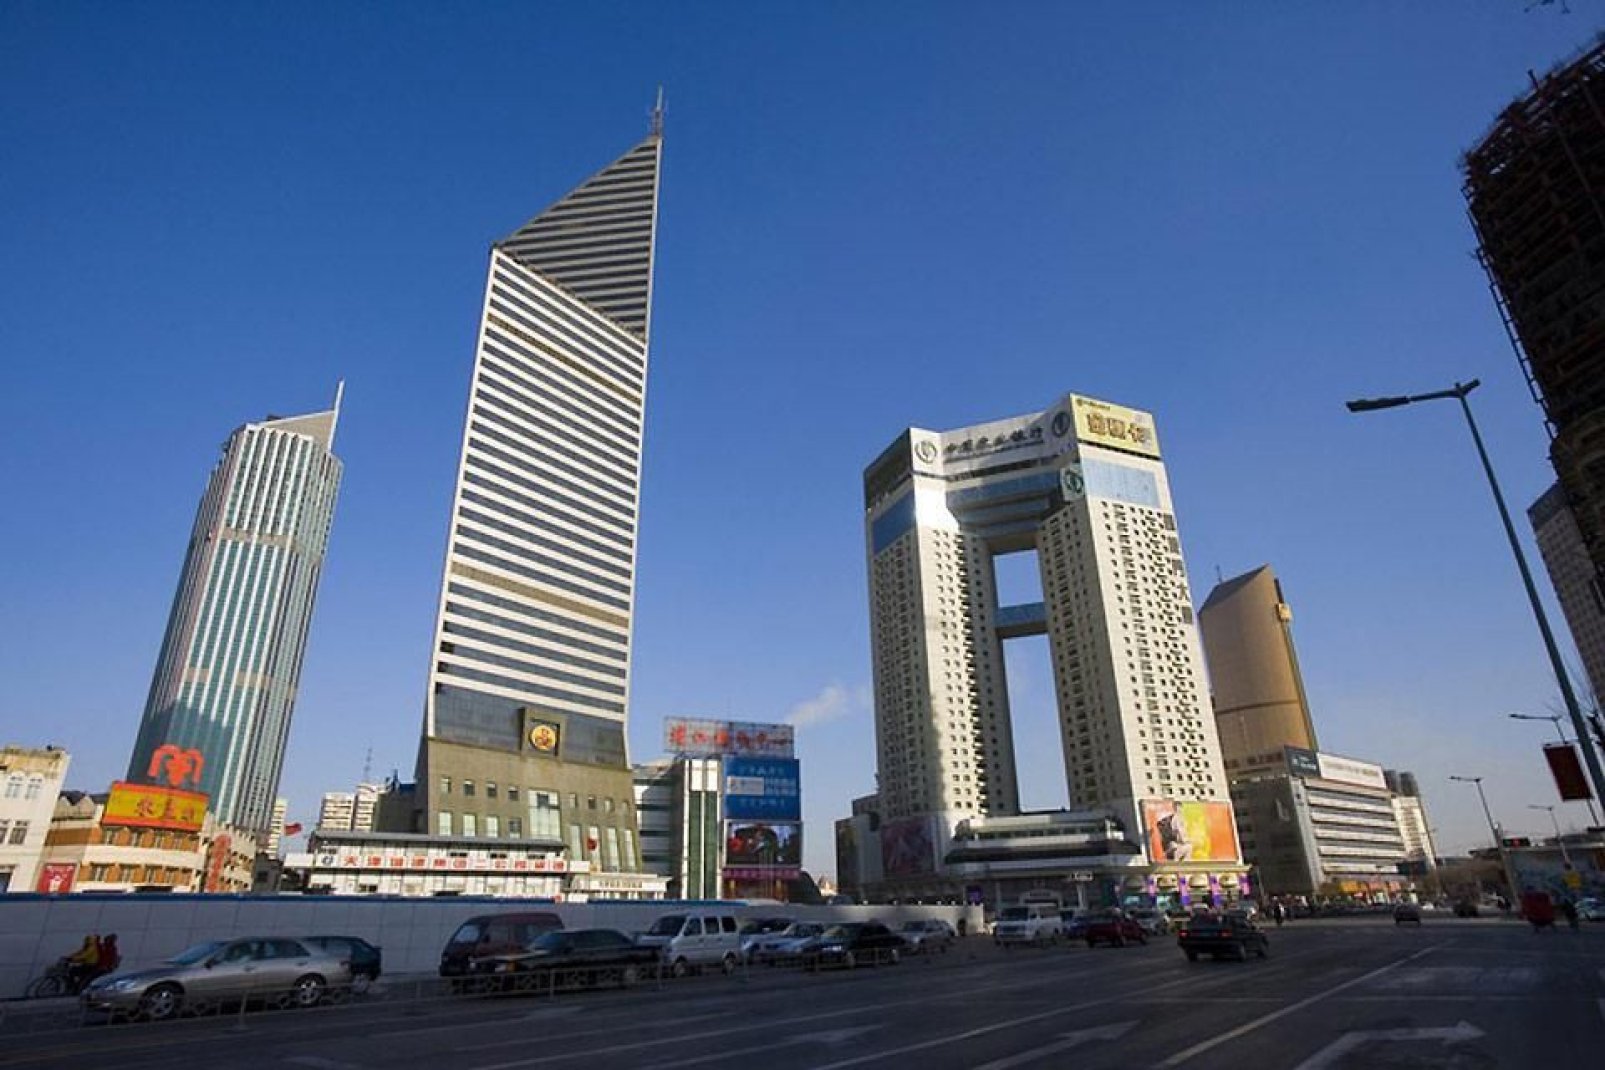 Importanti aziende internazionali si sono insediate a Tianjin.